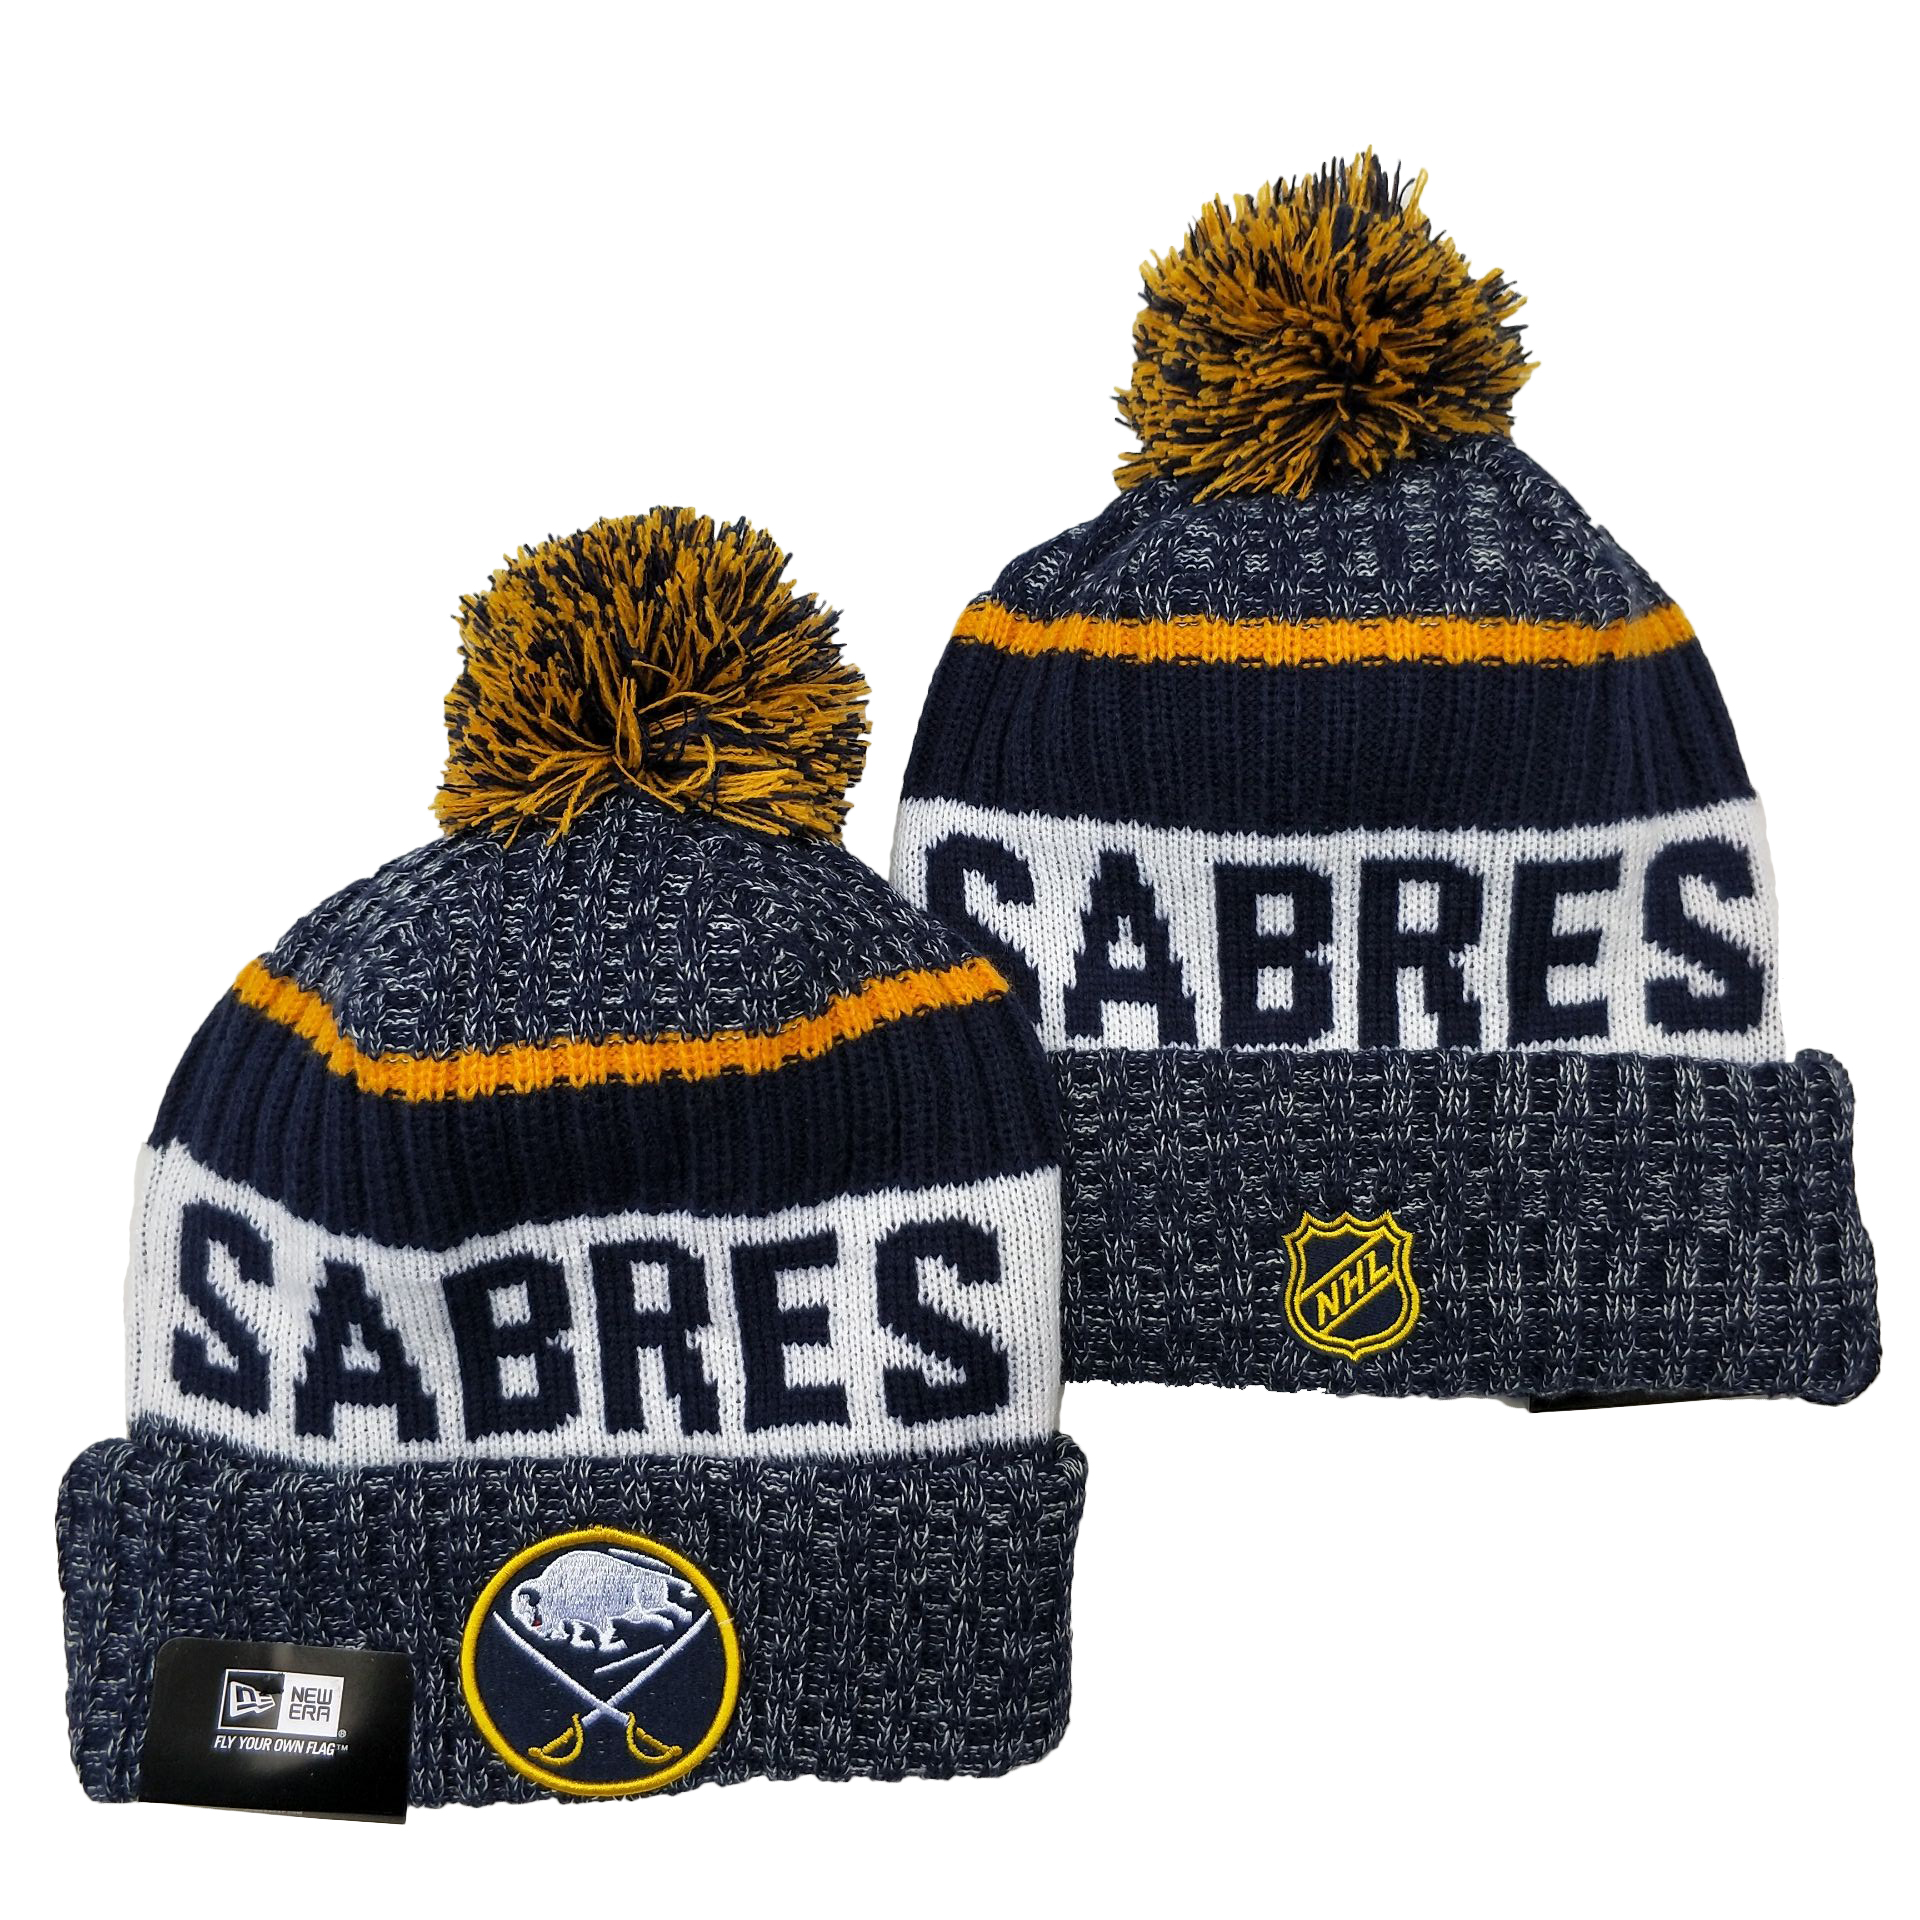 Buffalo Sabres Knit Hats 001